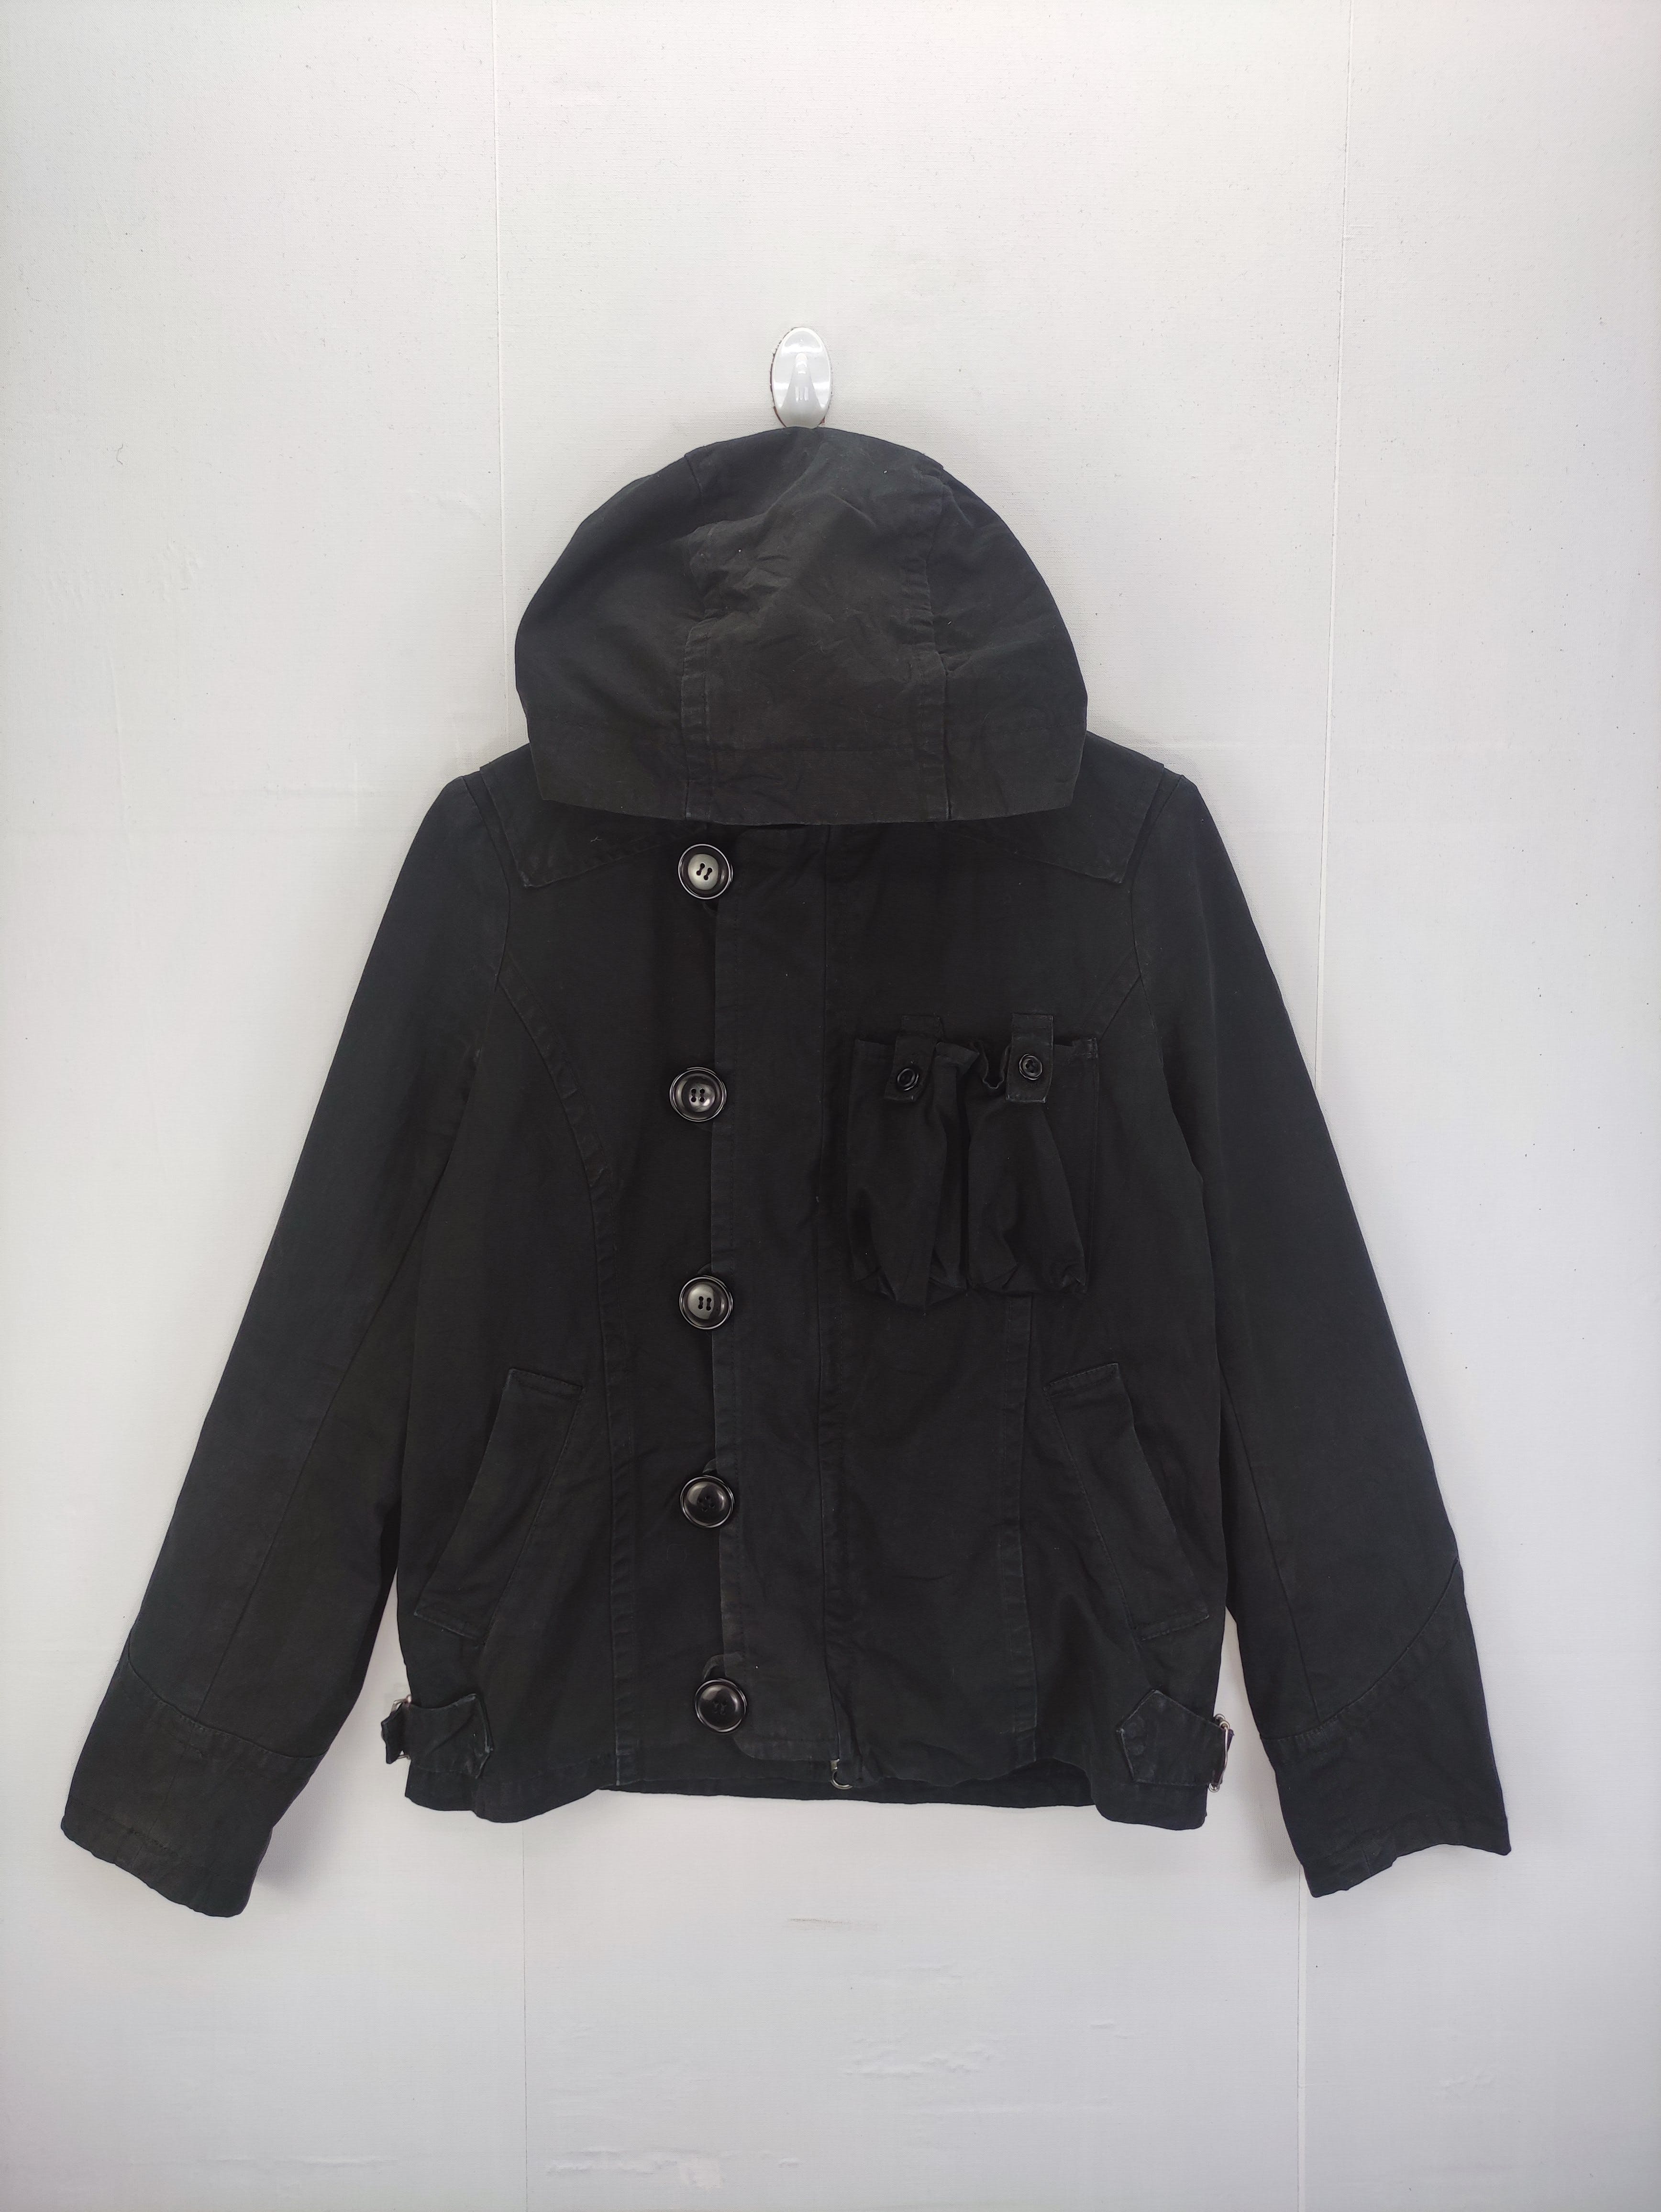 Vintage Sunaokuwahara Jacket Hoodie Zipper - 1